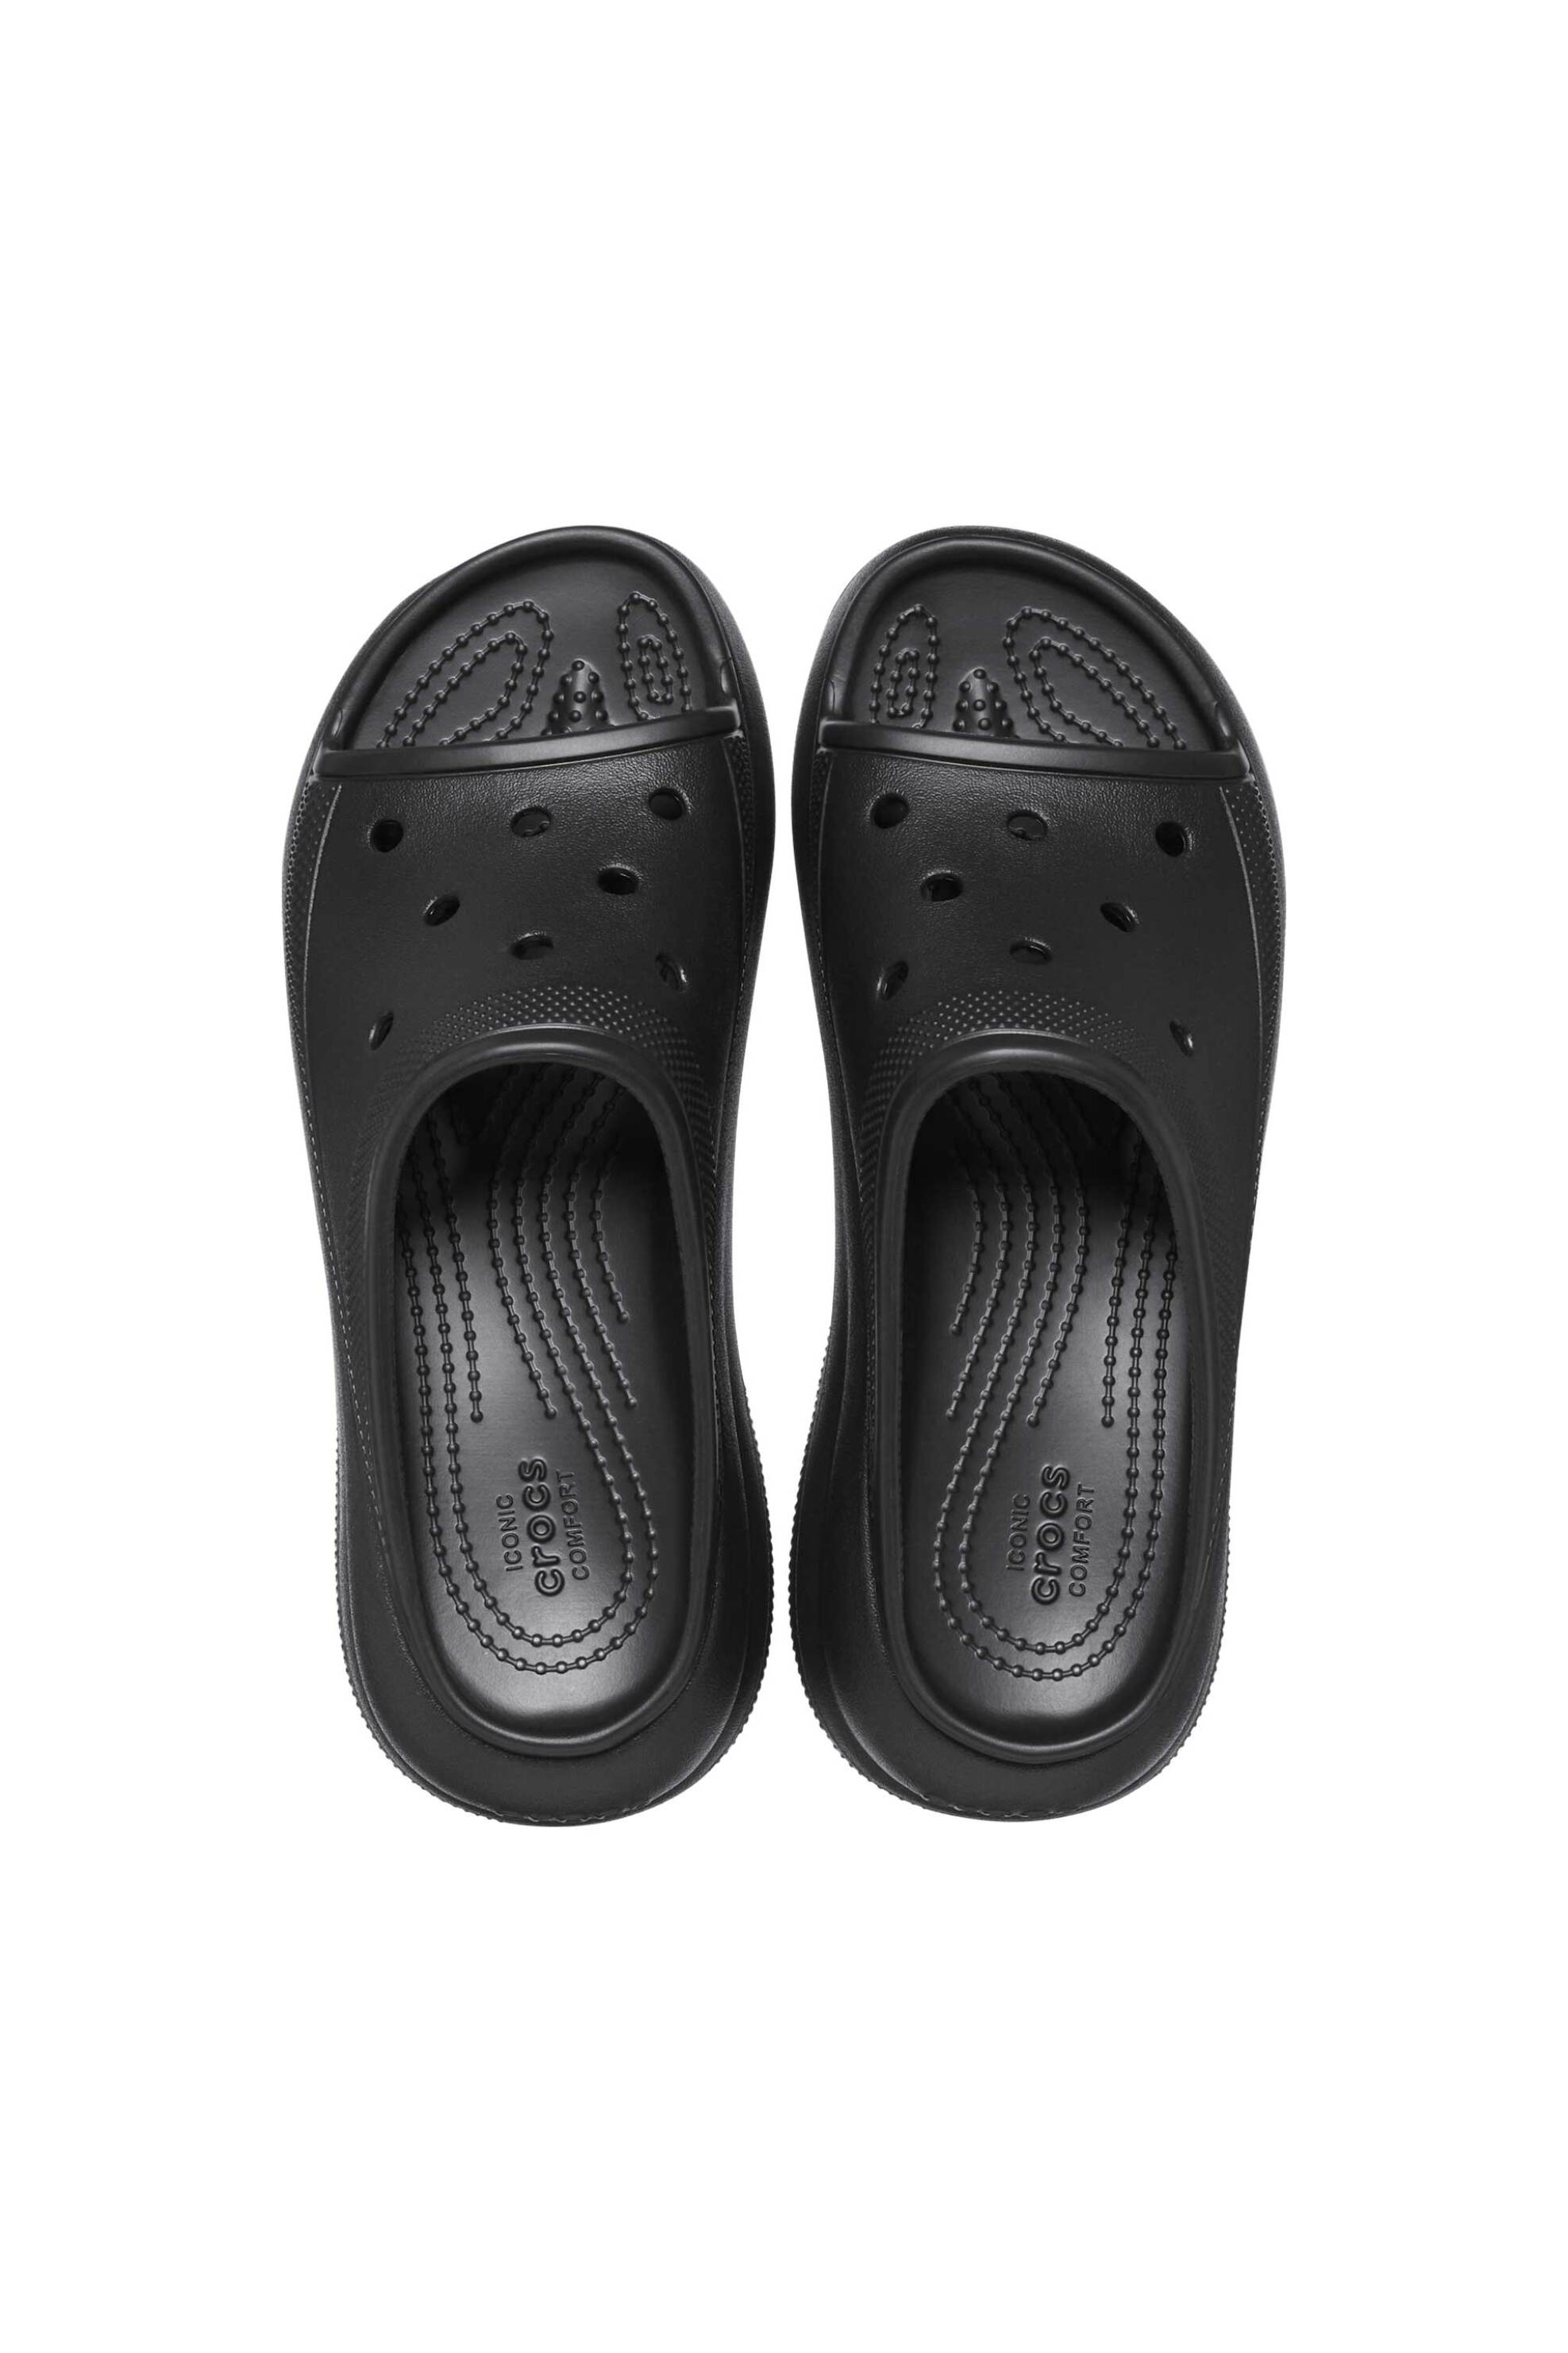 Ανδρική Μόδα > Ανδρικά Παπούτσια > Ανδρικές Παντόφλες & Σαγιονάρες Crocs unisex σαγιονάρες "Crush" - E61111 Μαύρο